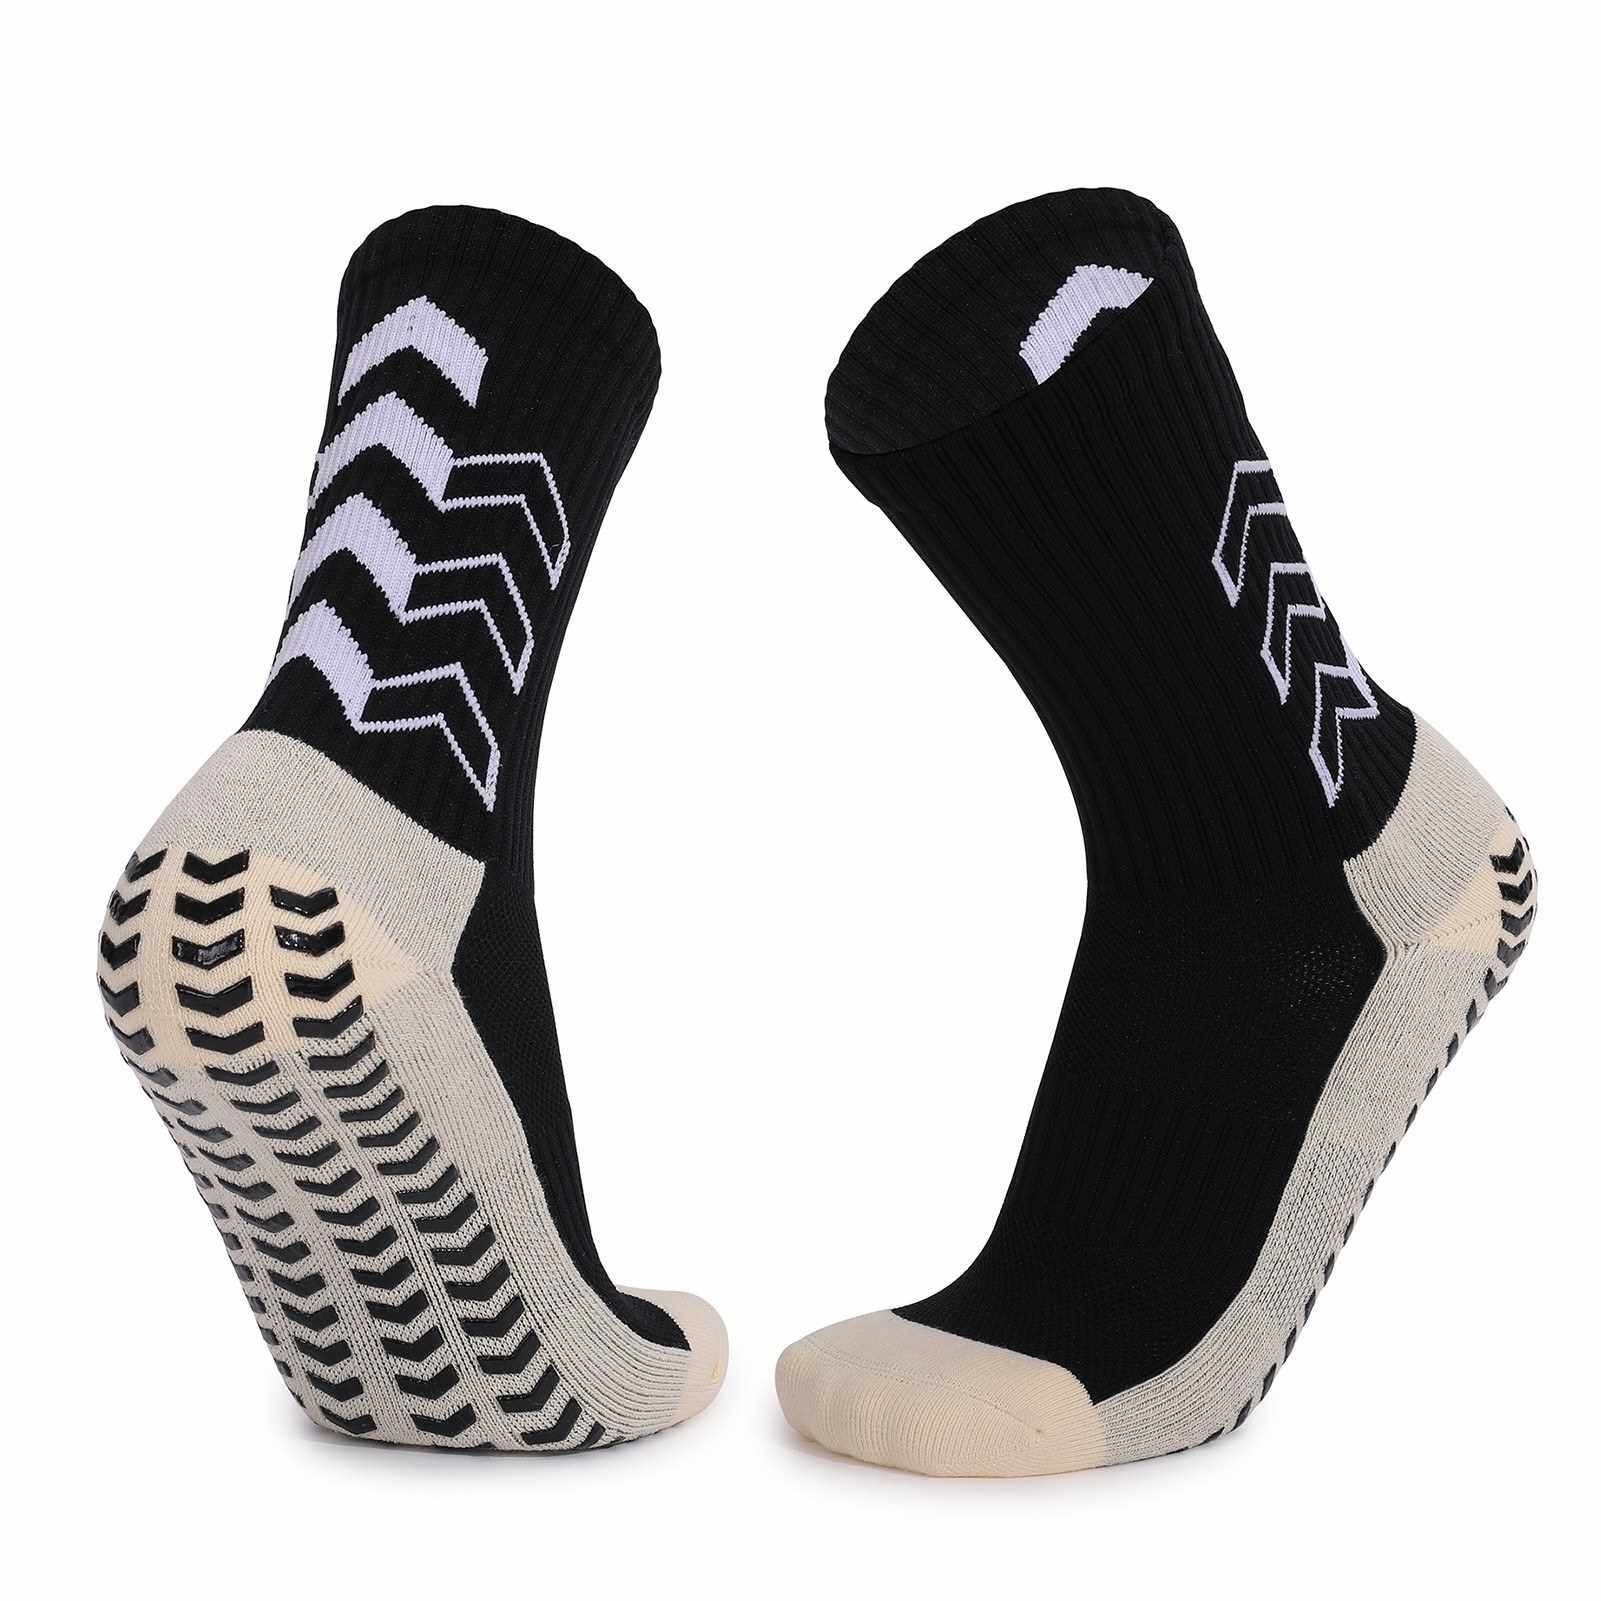 BEST SELLER Sport Cushioned Socks Non Slip Grip for Basketball Soccer Ski Cycling Athletic Socks (Black)